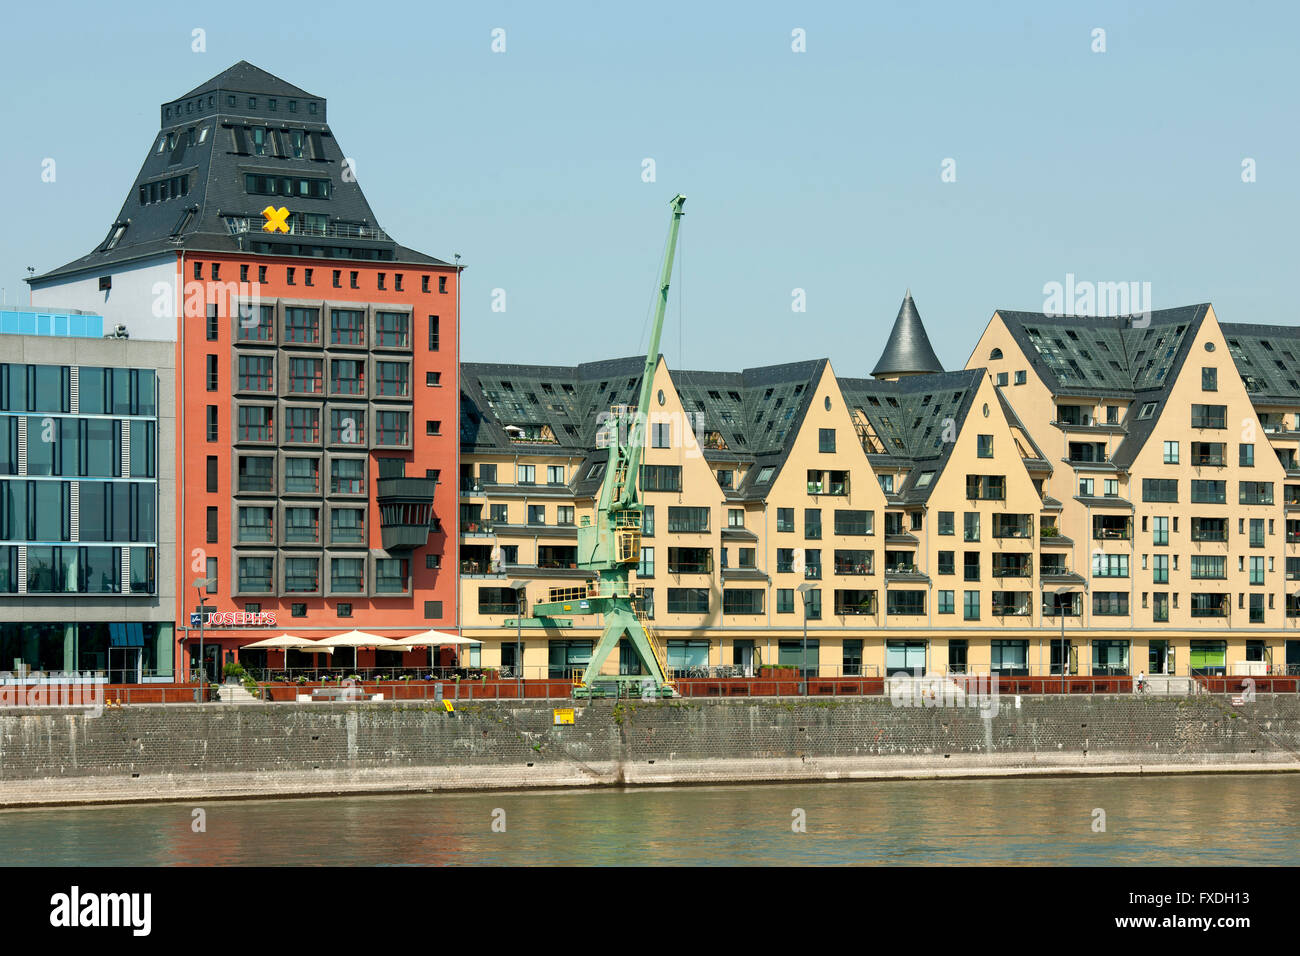 Deutschland, Nordrhein-Westfalen, Köln, Rheinauhafen, die alten Speichergebäude wurden renoviert. Stock Photo